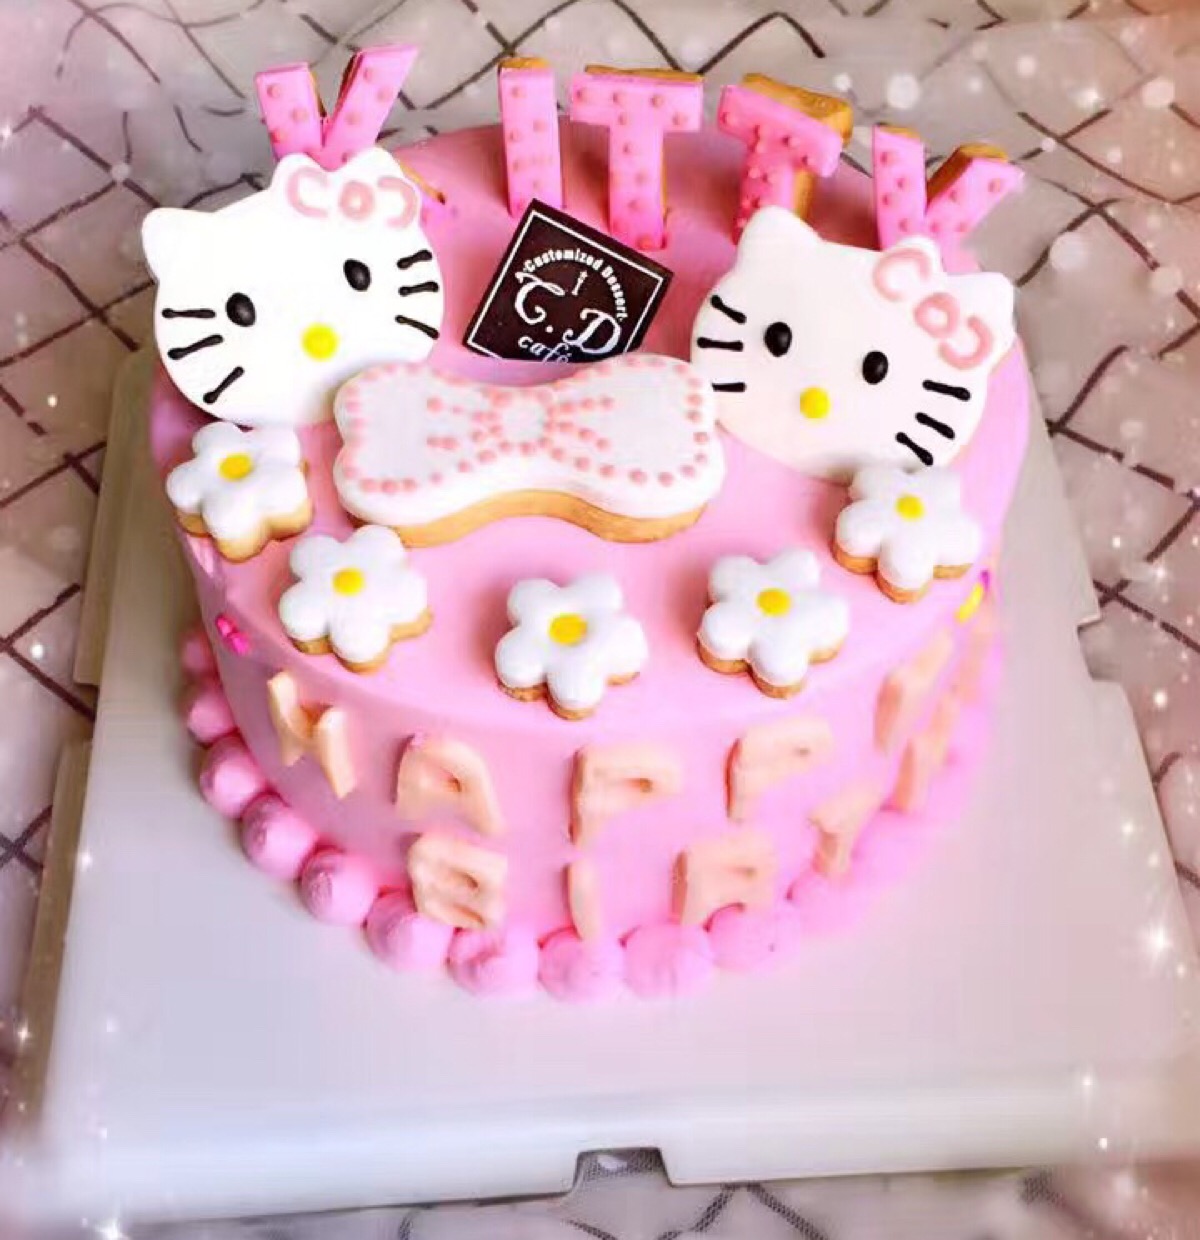 粉粉的kt猫蛋糕 卡哇伊(62 62)